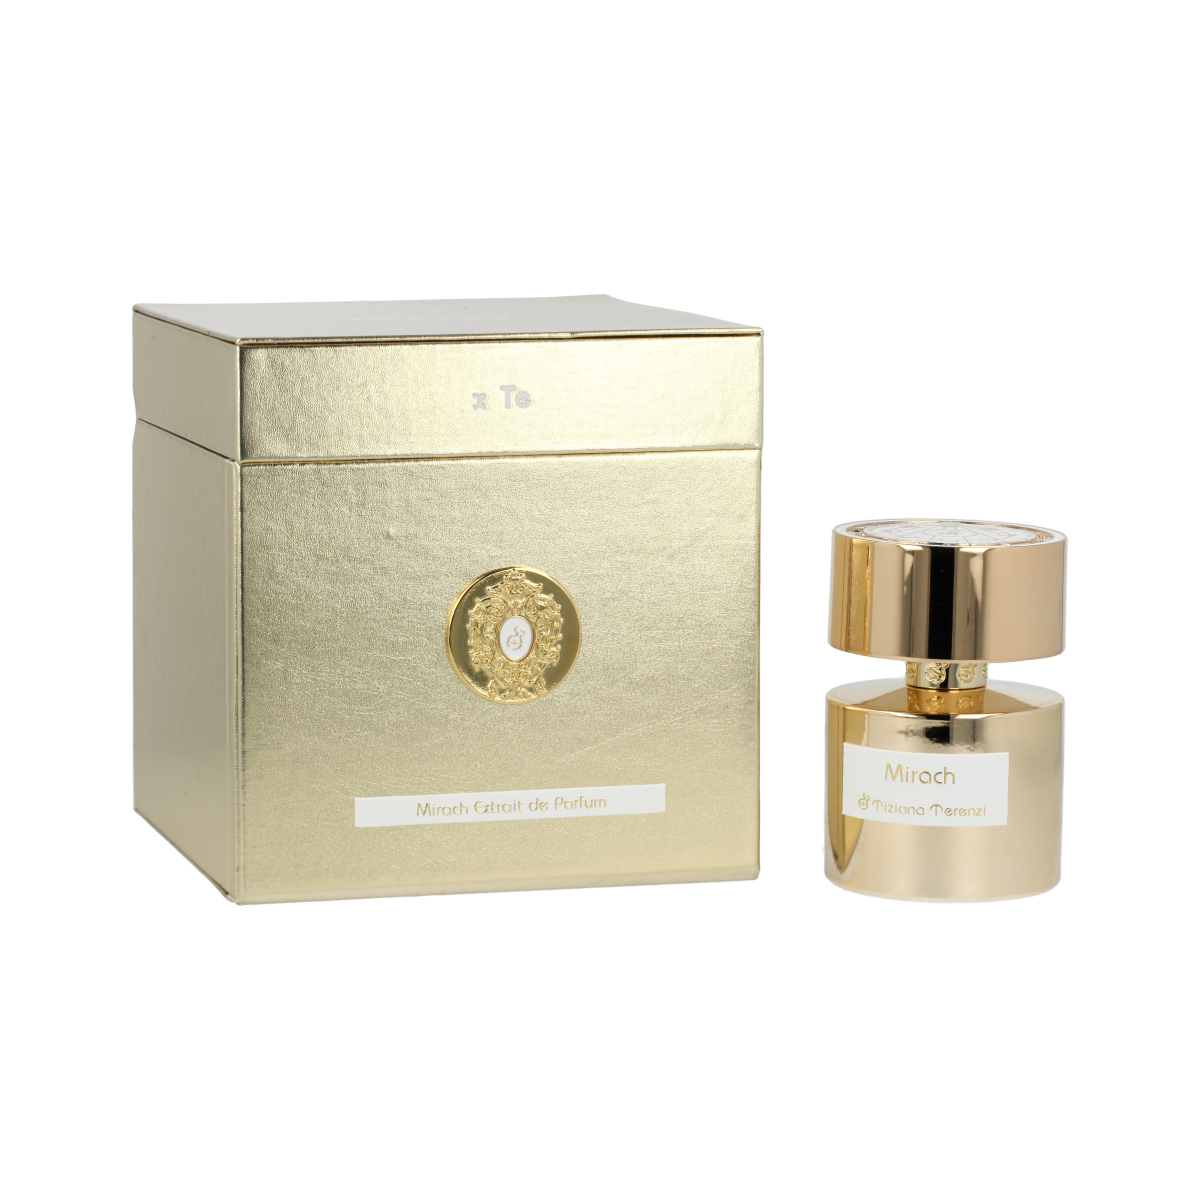 Tiziana Terenzi Mirach 15 ml NIŠINIAI kvepalų mėginukas (atomaizeris) Unisex Parfum